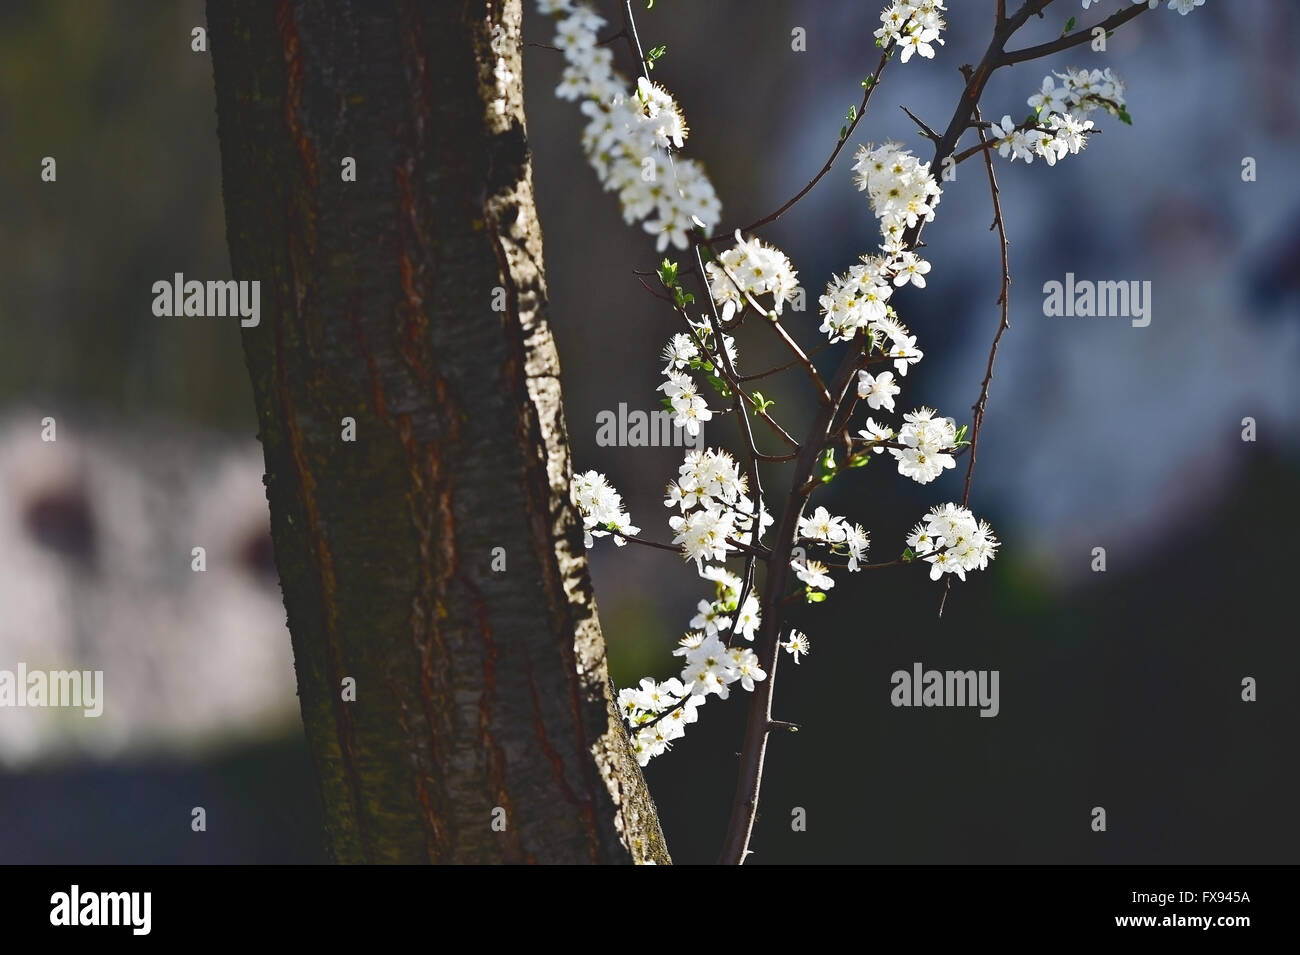 Blooming blancas flores de cerezo en un árbol en primavera con el cielo azul de fondo Foto de stock